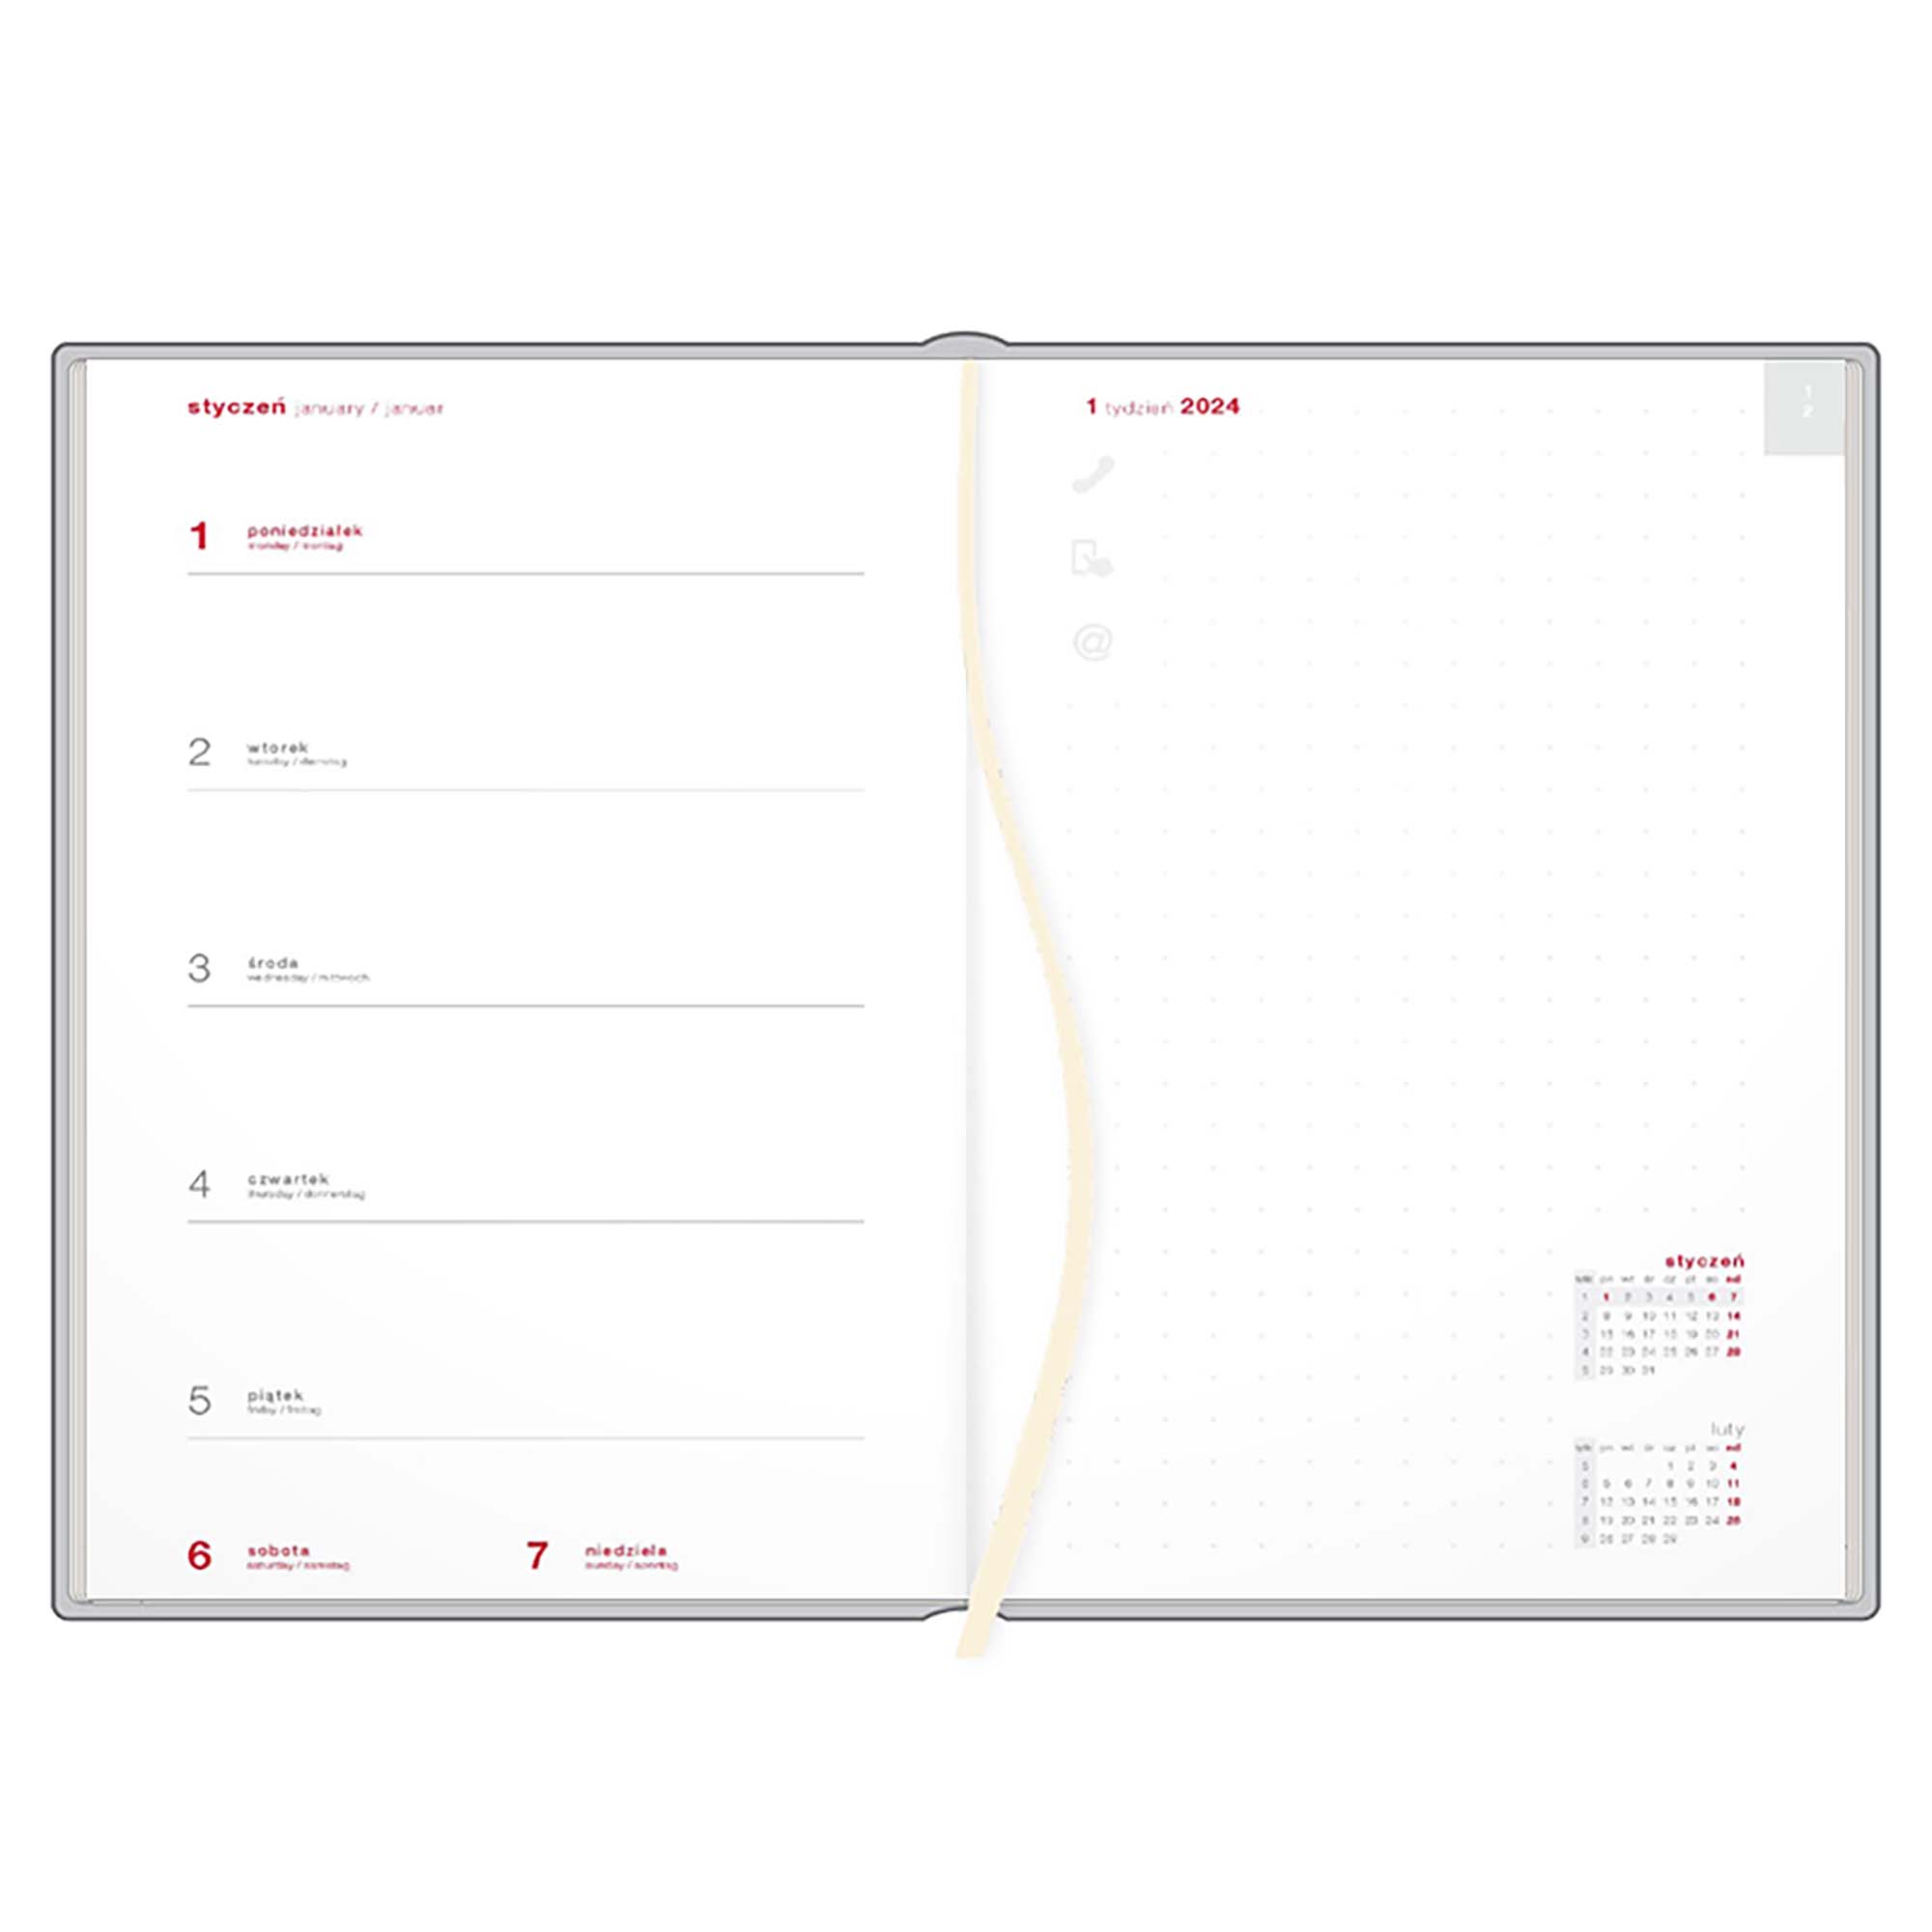 Kalendarz książkowy B5 tygodniowy z notesem, Victoria, srebrno-niebieski